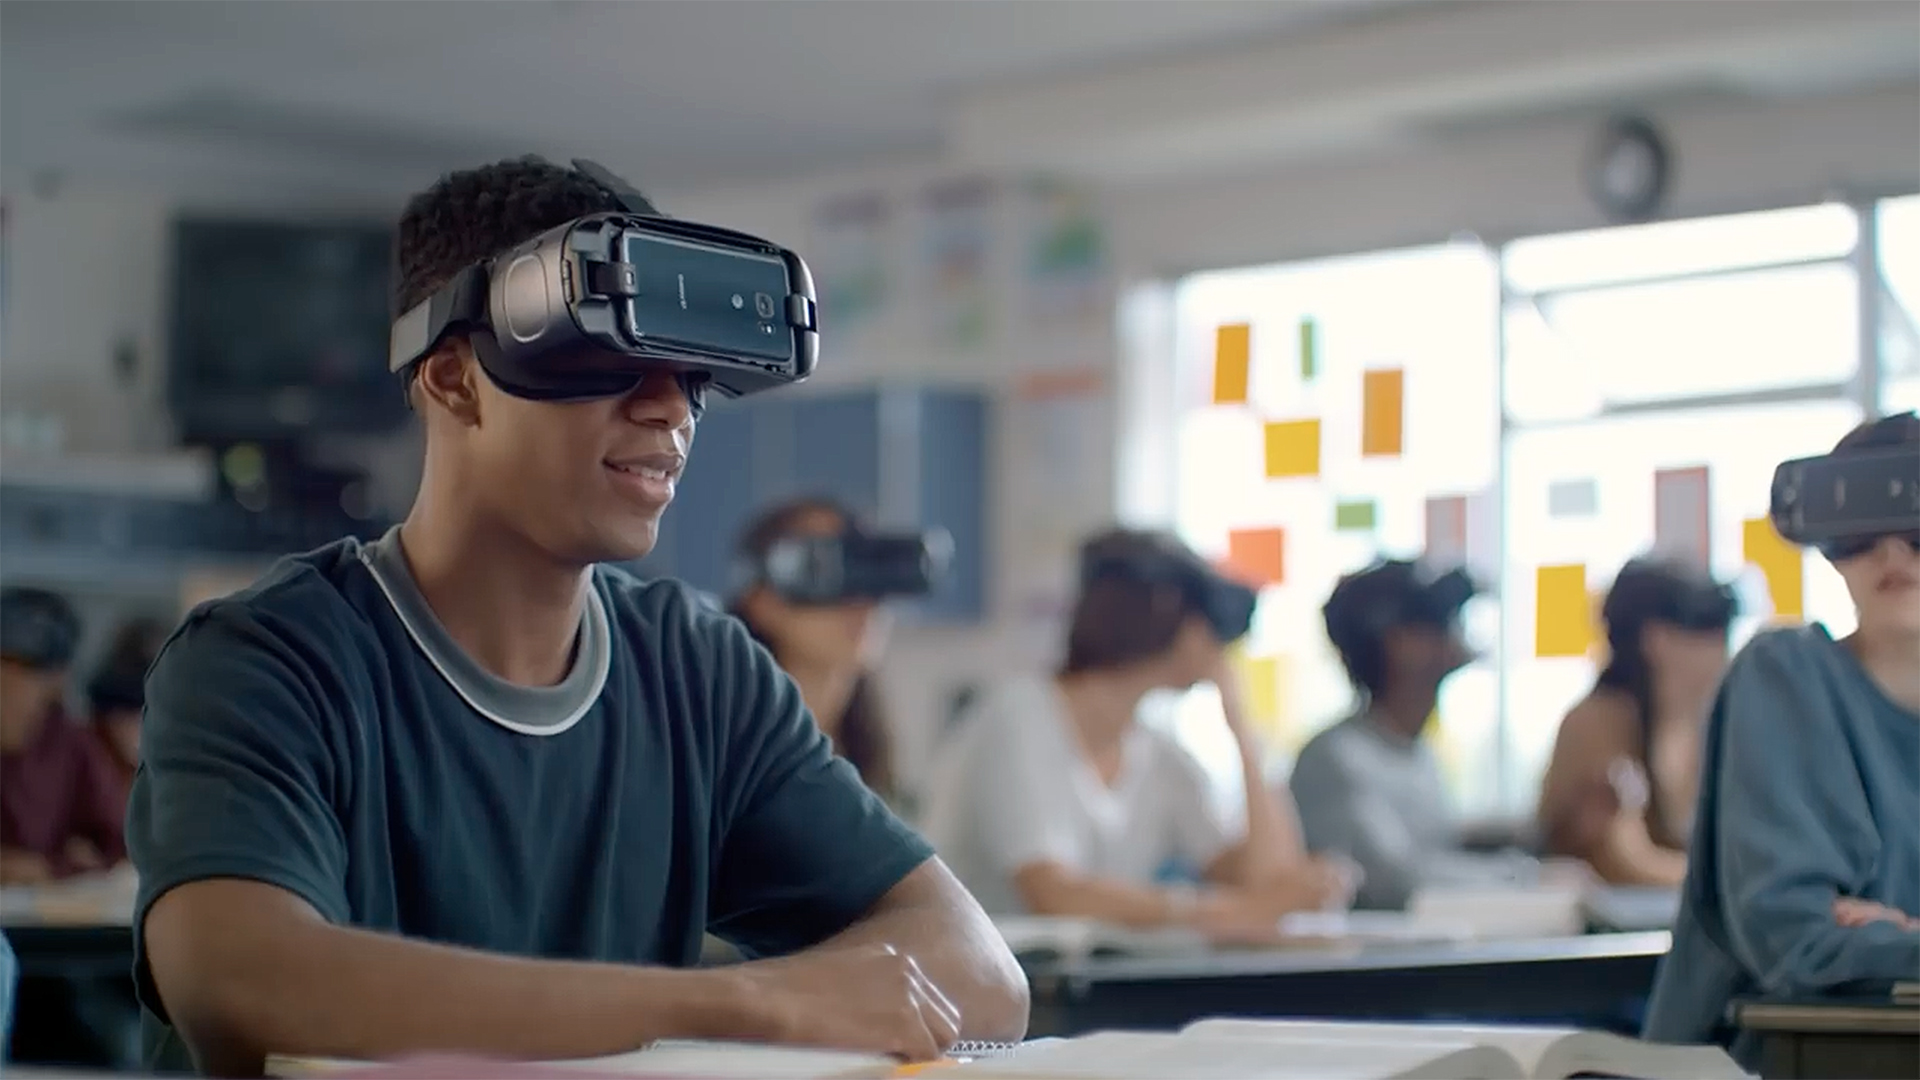 Field trips in virtual reality